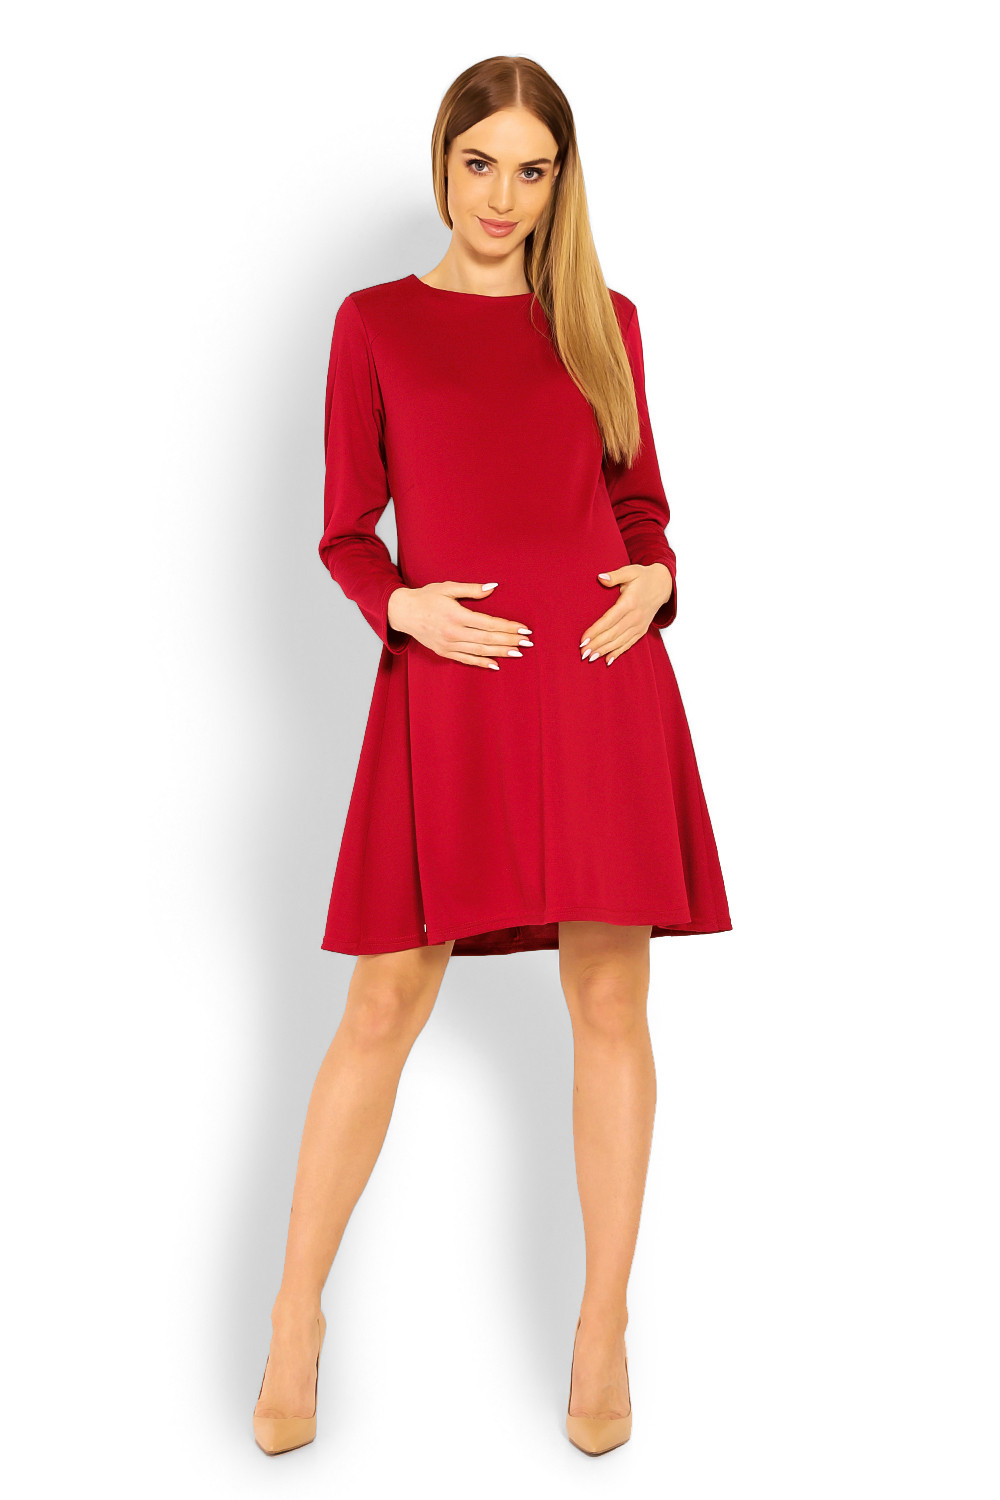 Dámské těhotenské šaty 1359 Červená - PeeKaBoo červená L/XL